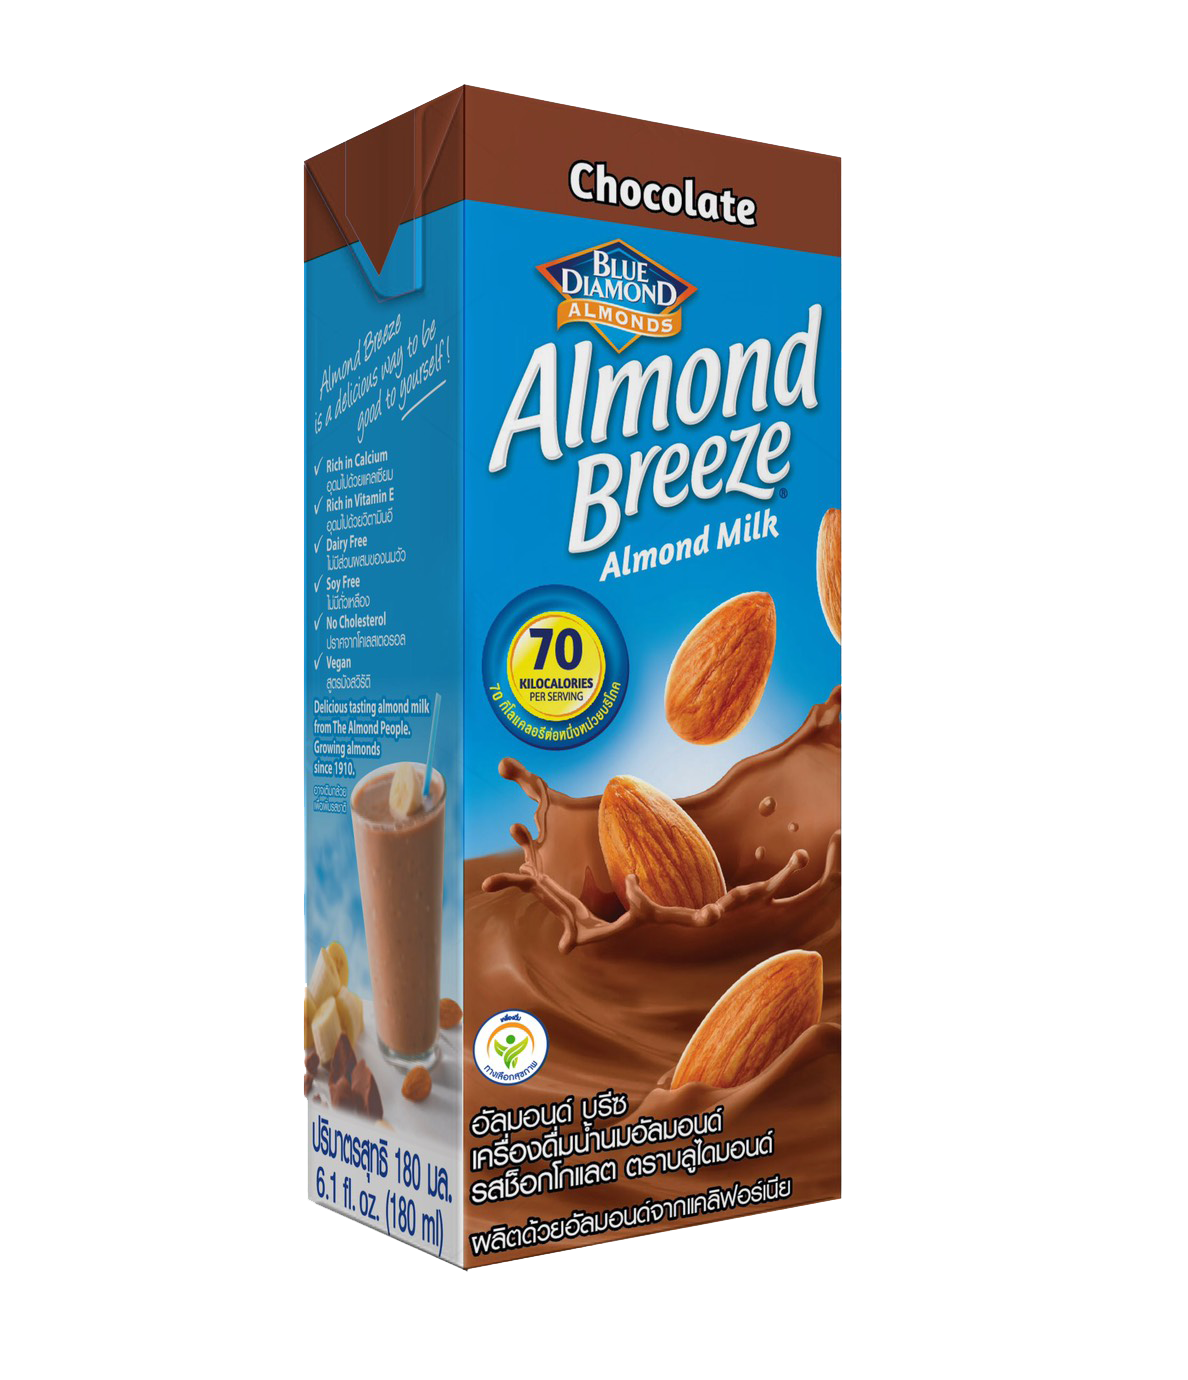 Thùng Sữa Hạt Hạnh Nhân ALMOND BREEZE CHOCOLATE 180ml - Sản phẩm của TẬP ĐOÀN BLUE DIAMOND MỸ - Đứng đầu về sản lượng tiêu thụ tại Mỹ